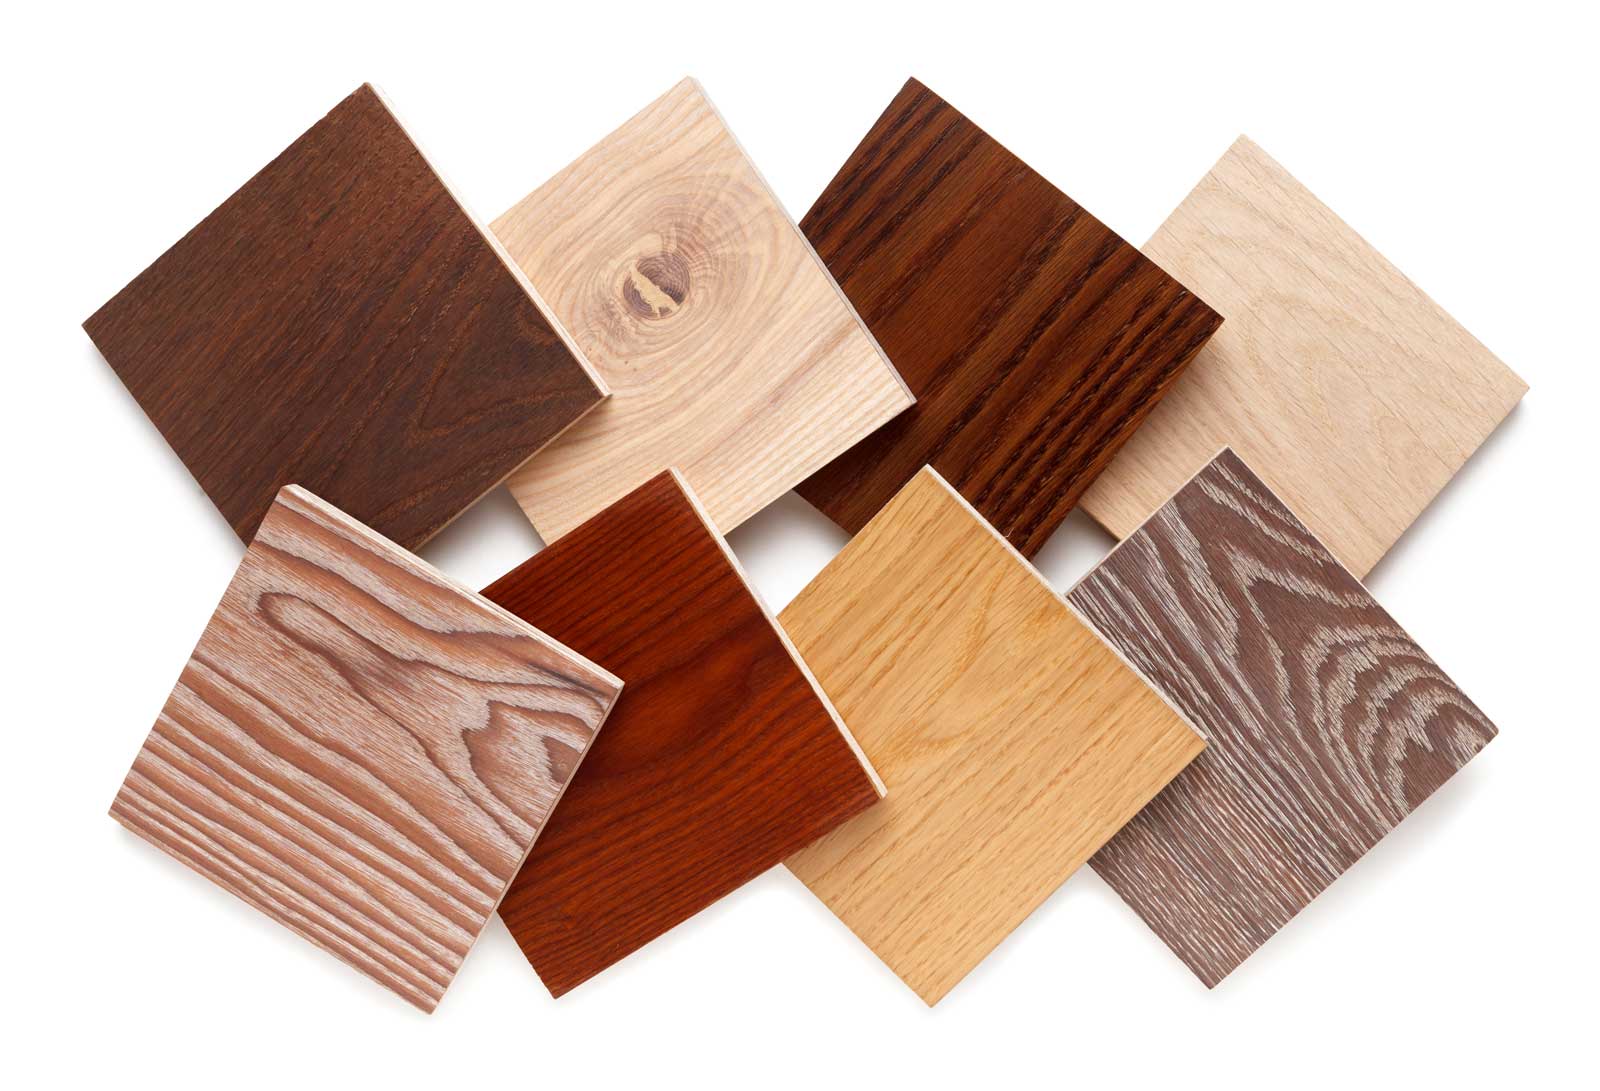 Samples of CUTEK timber